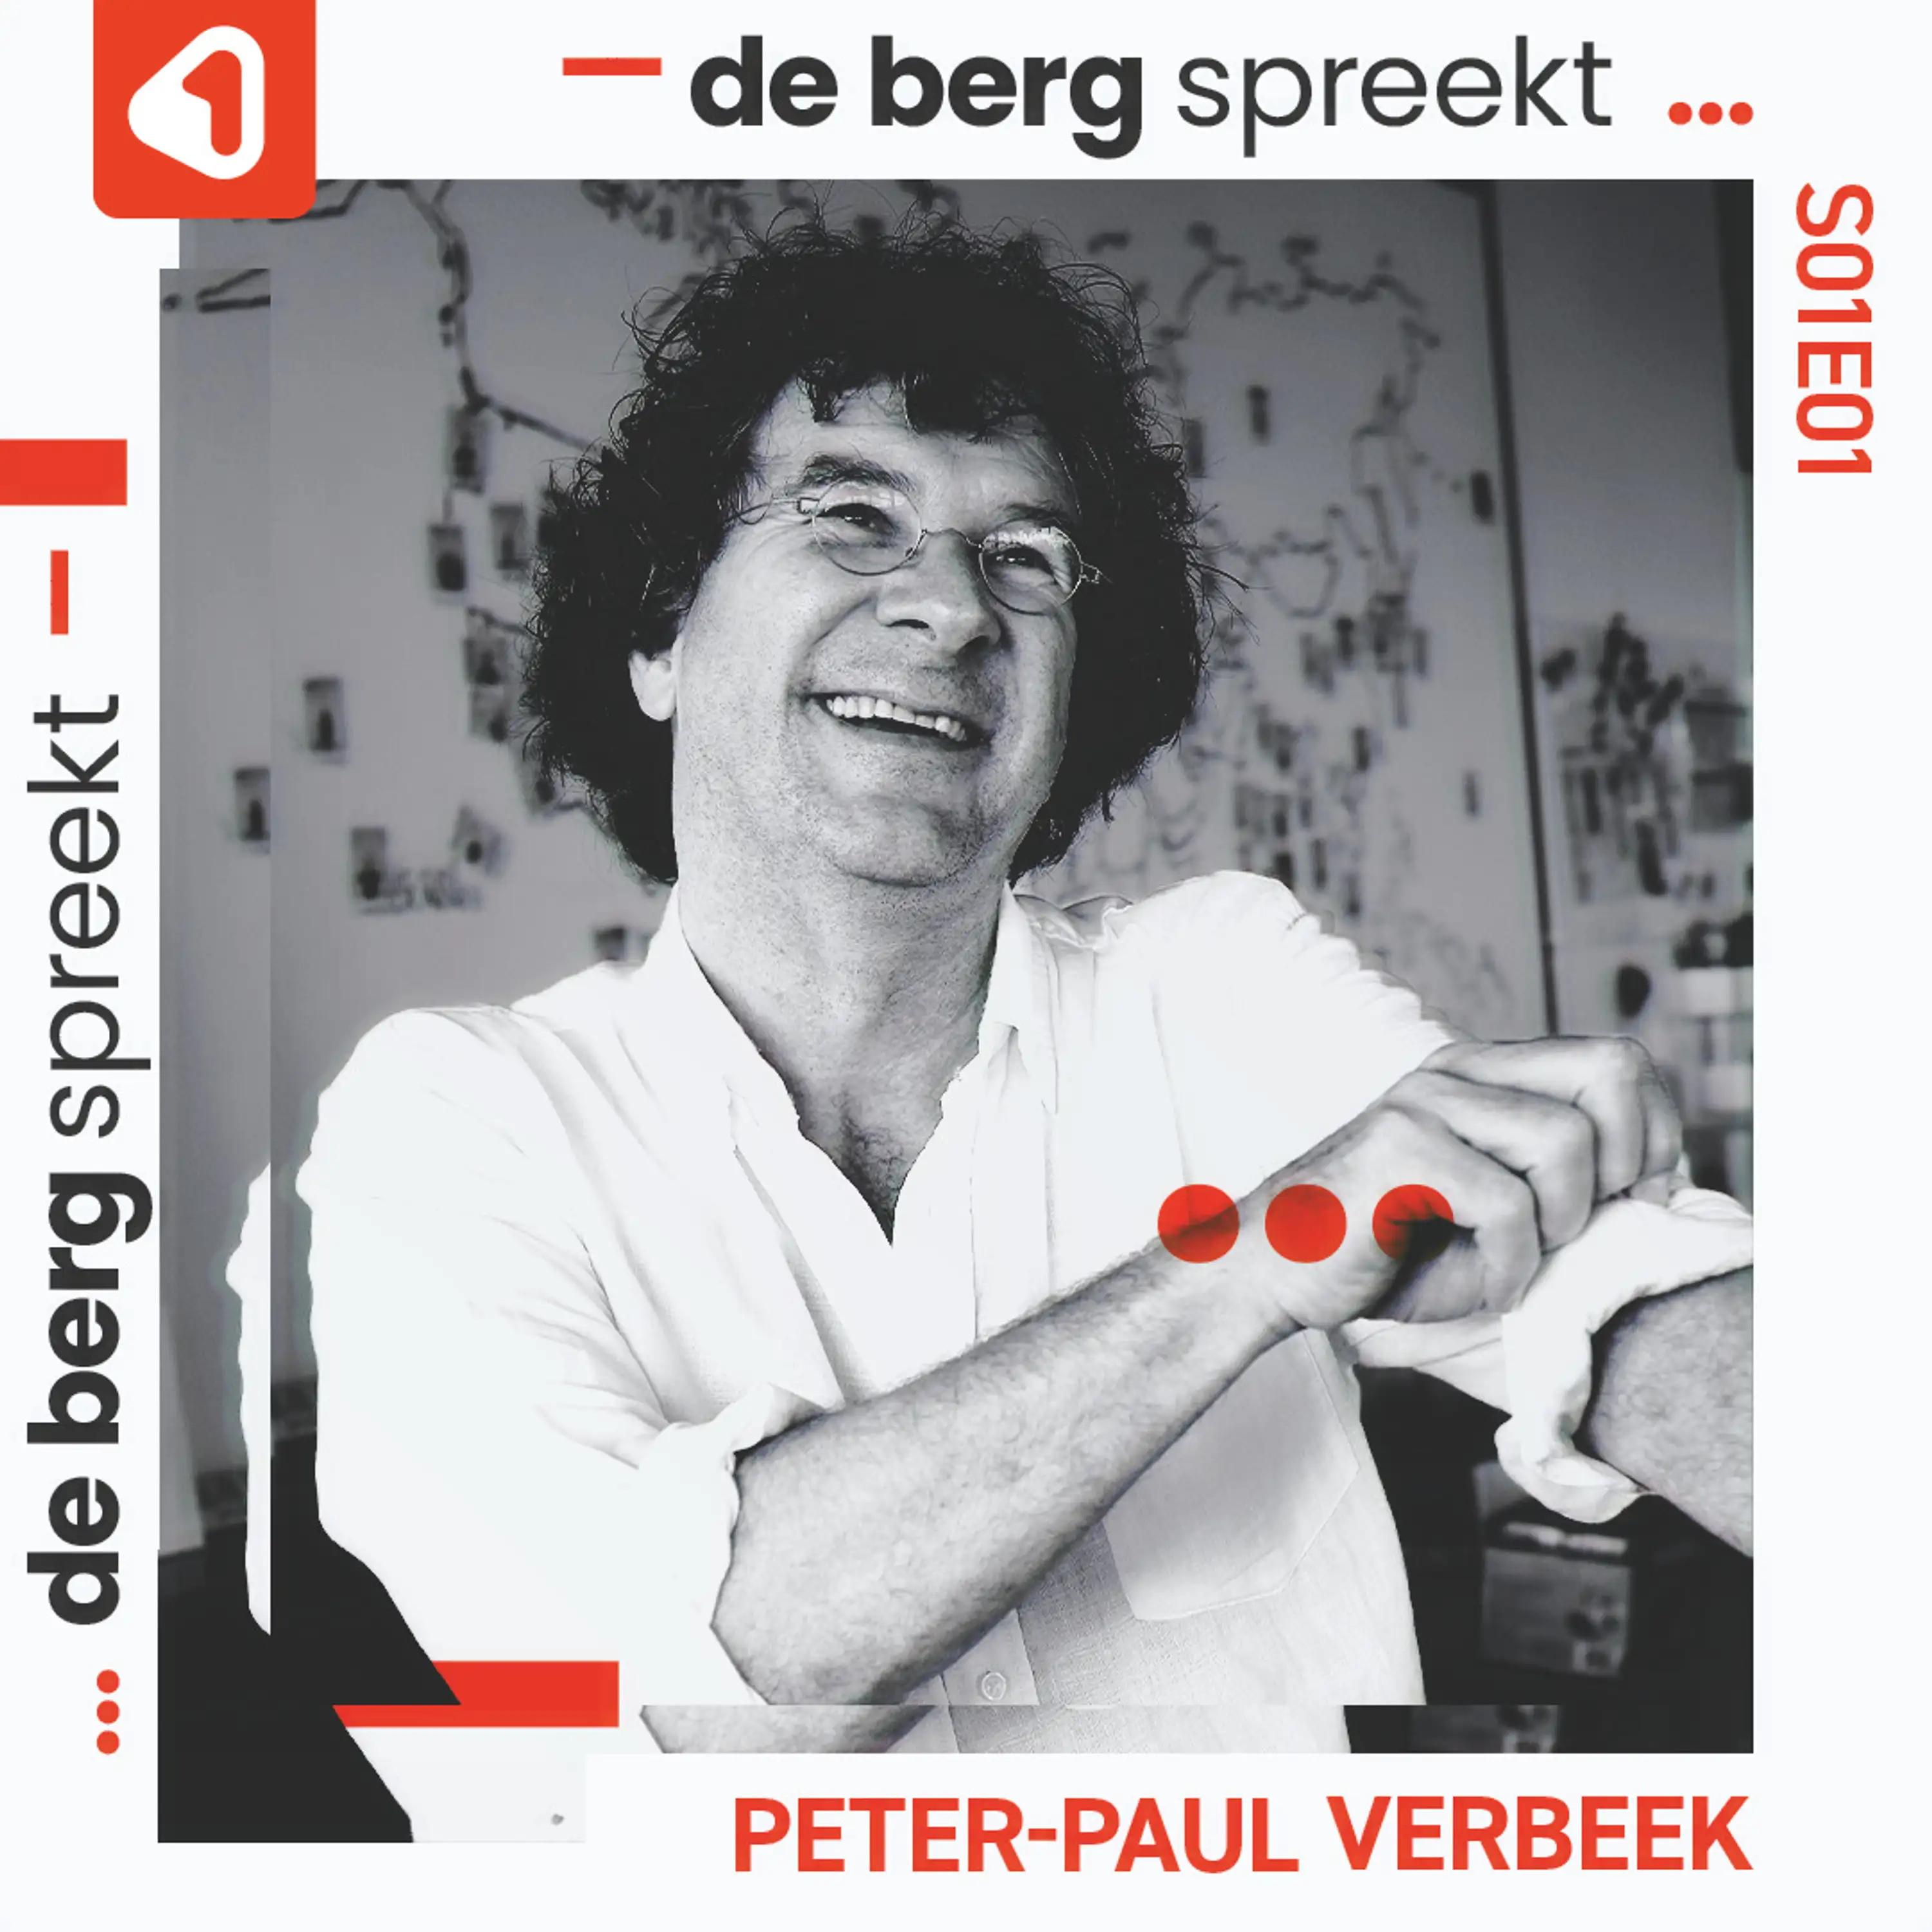 De Berg spreekt... professor Peter-Paul Verbeek